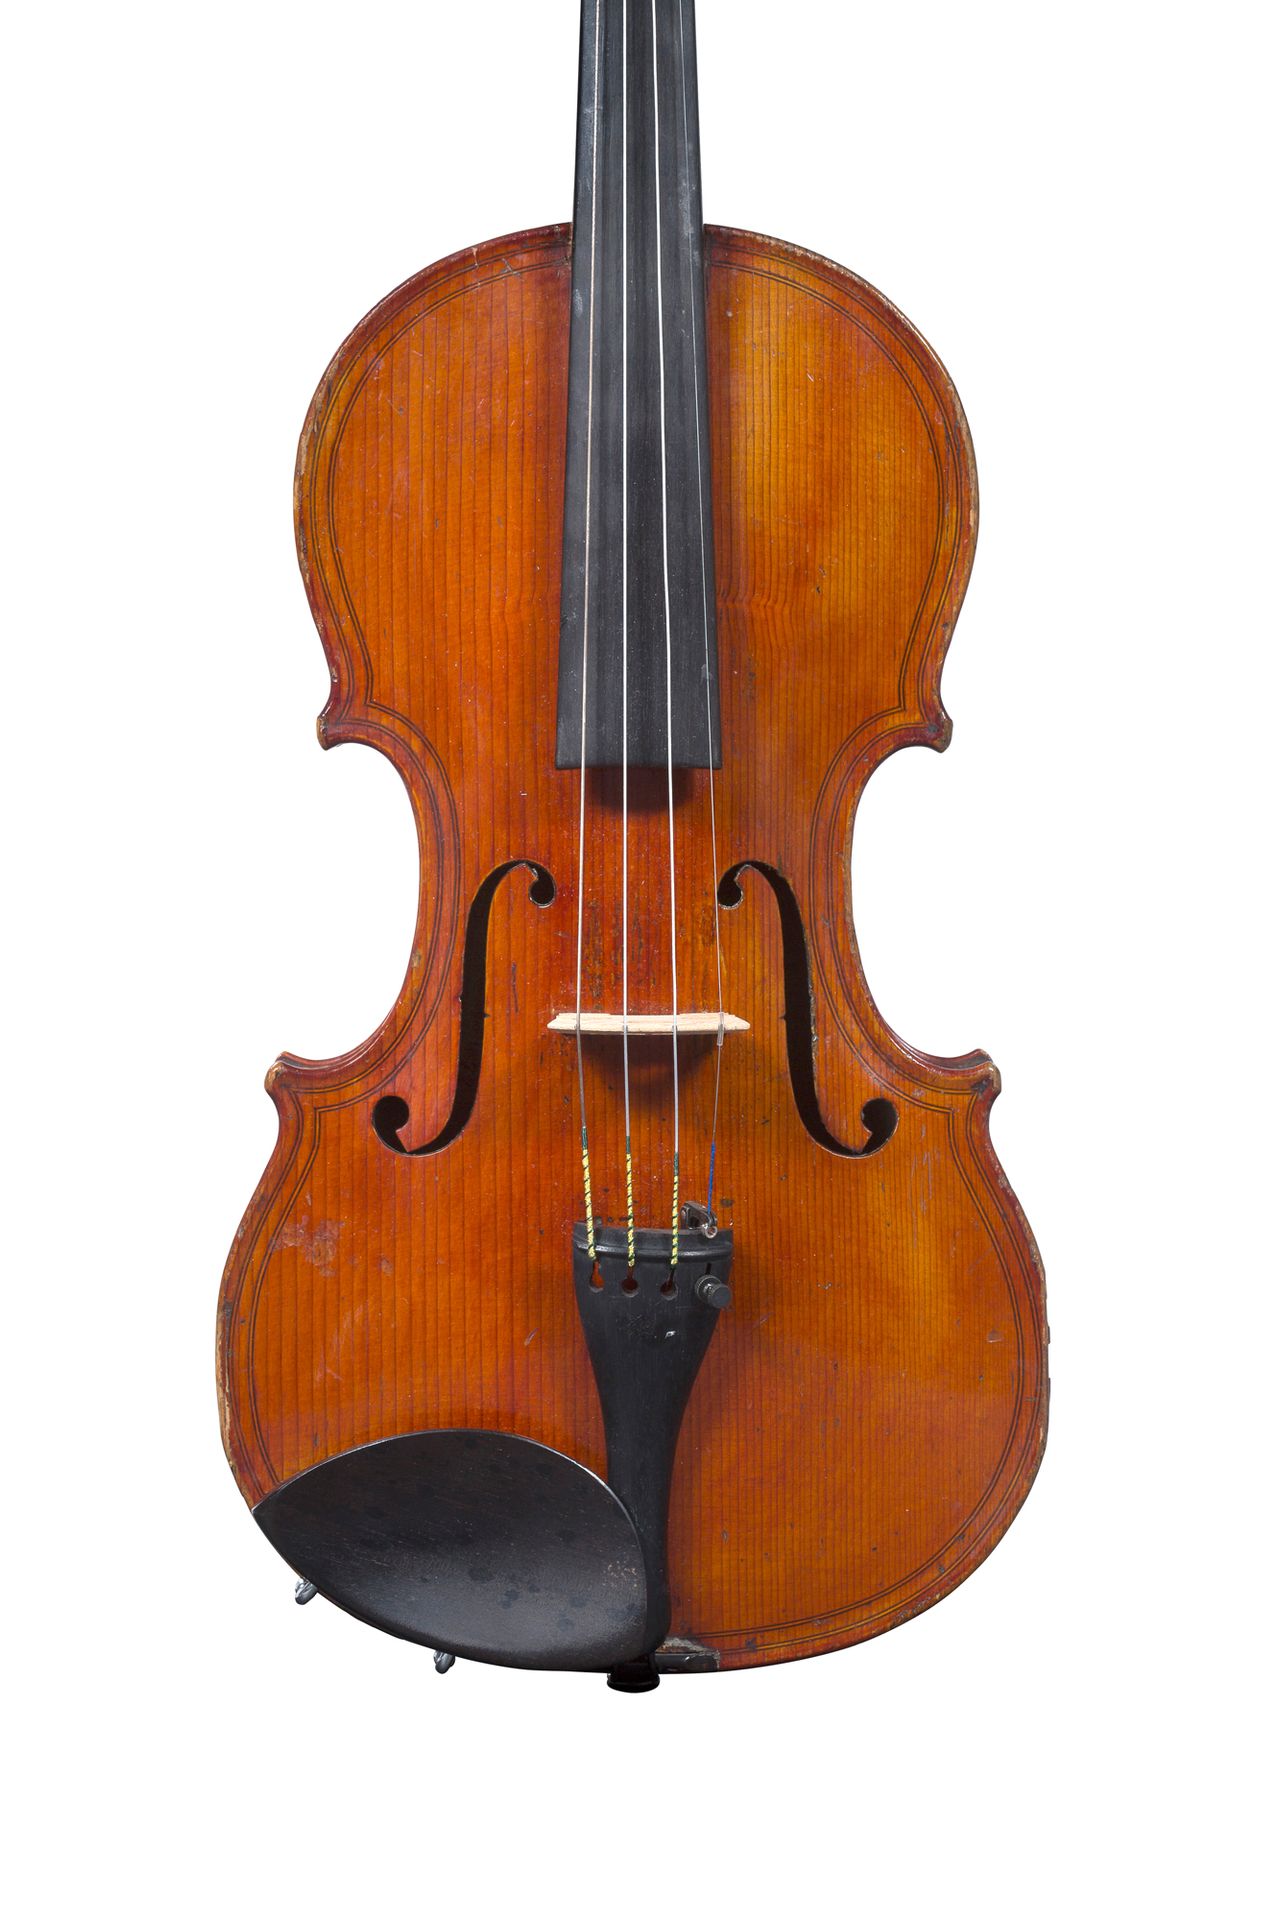 Null Geige von Nicolas Mauchand
Hergestellt in Mirecourt um 1820-30.
Modell mit &hellip;